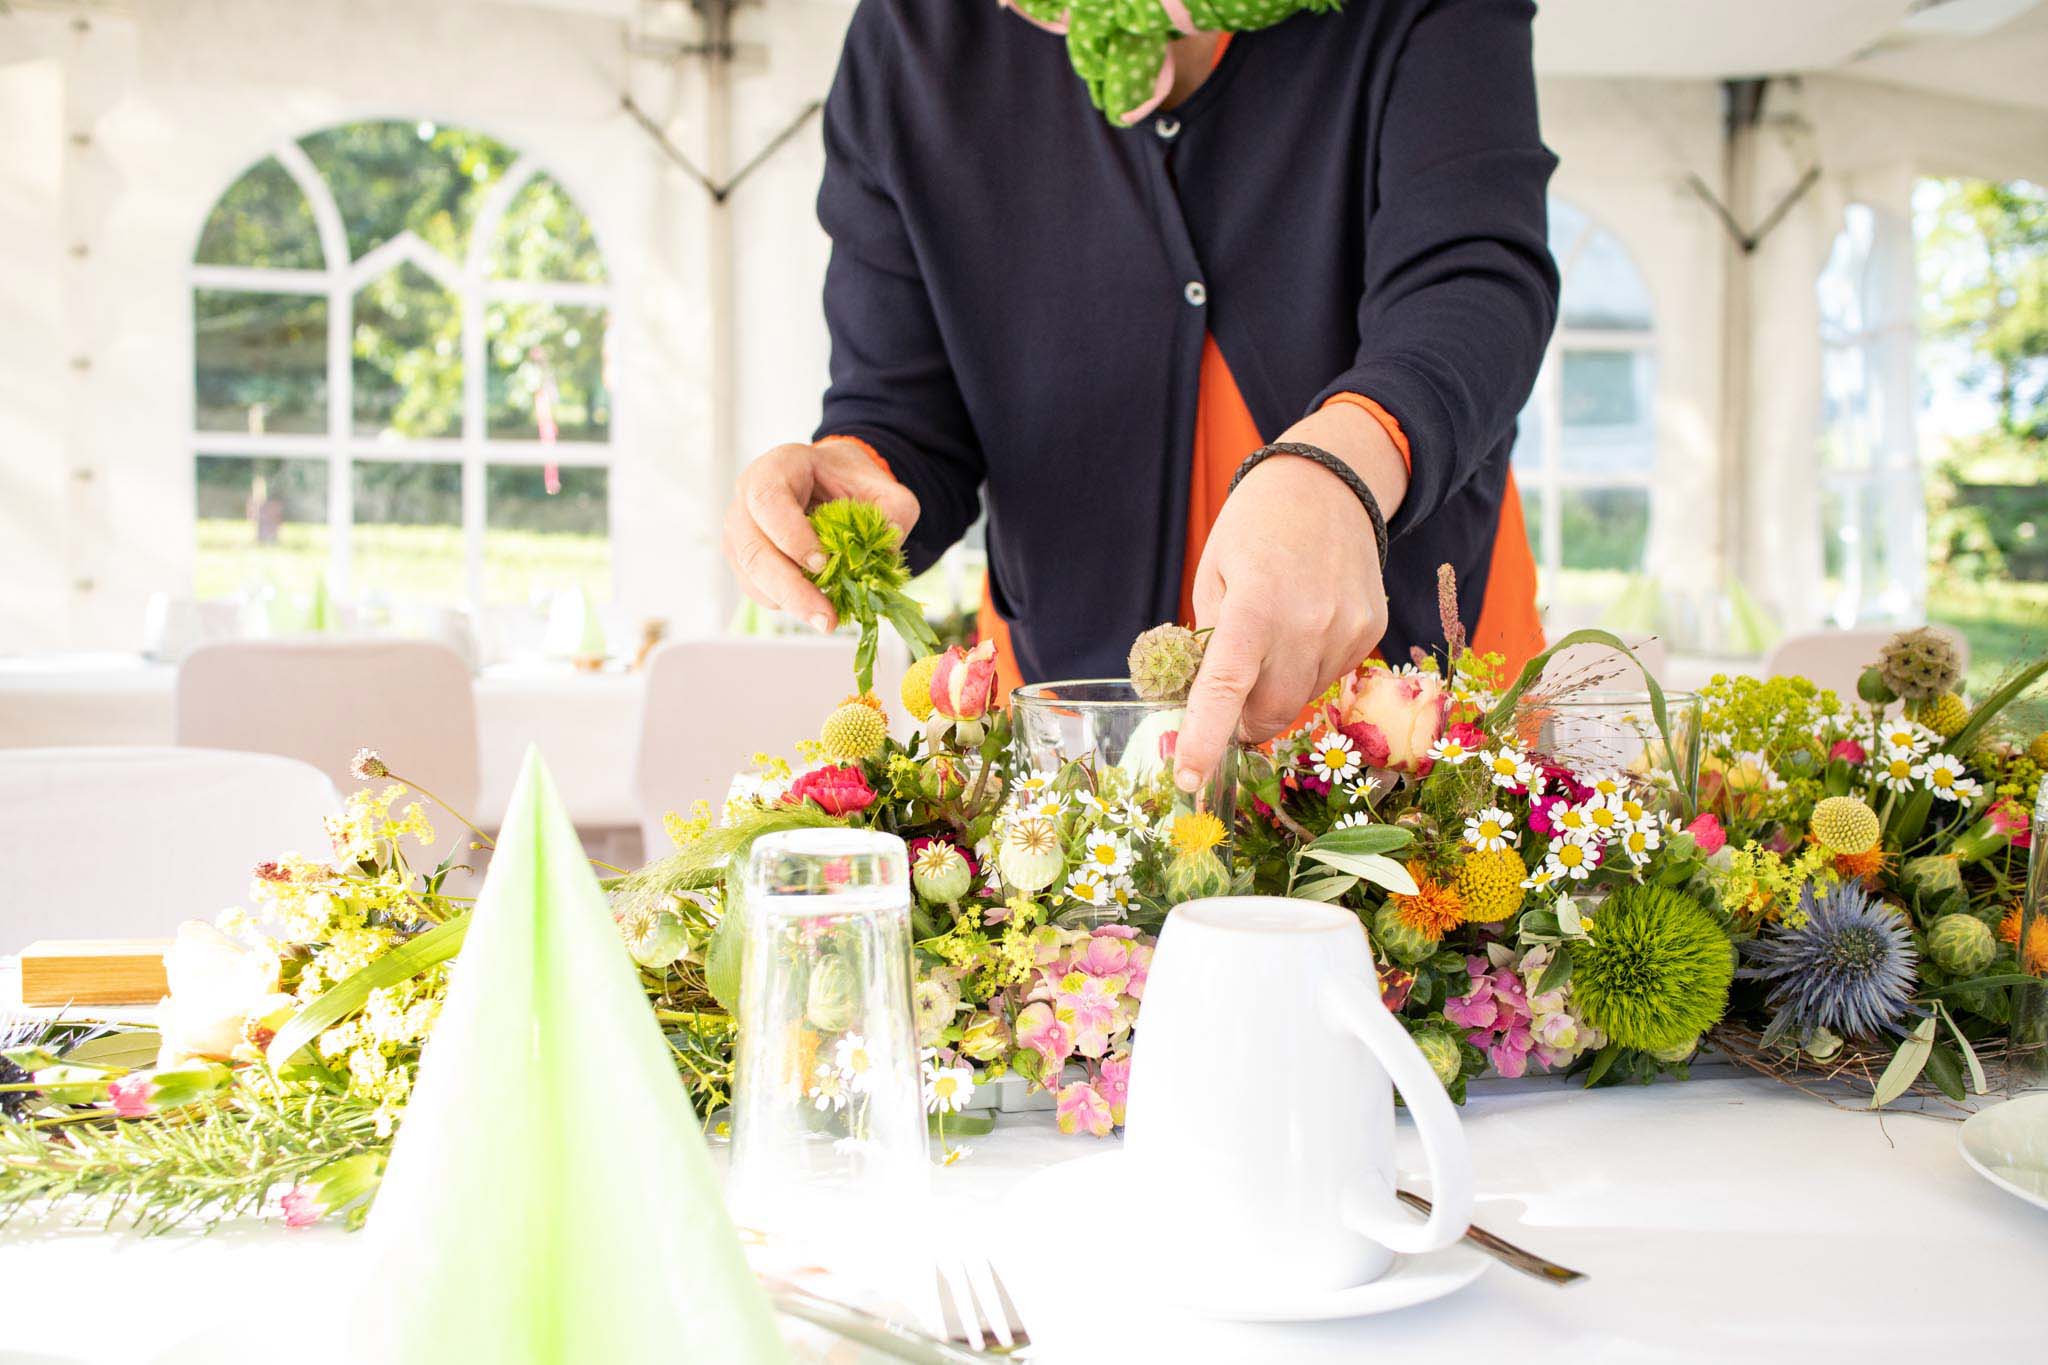 Irmis Blumenhain Hochzeit im eigenen Garten